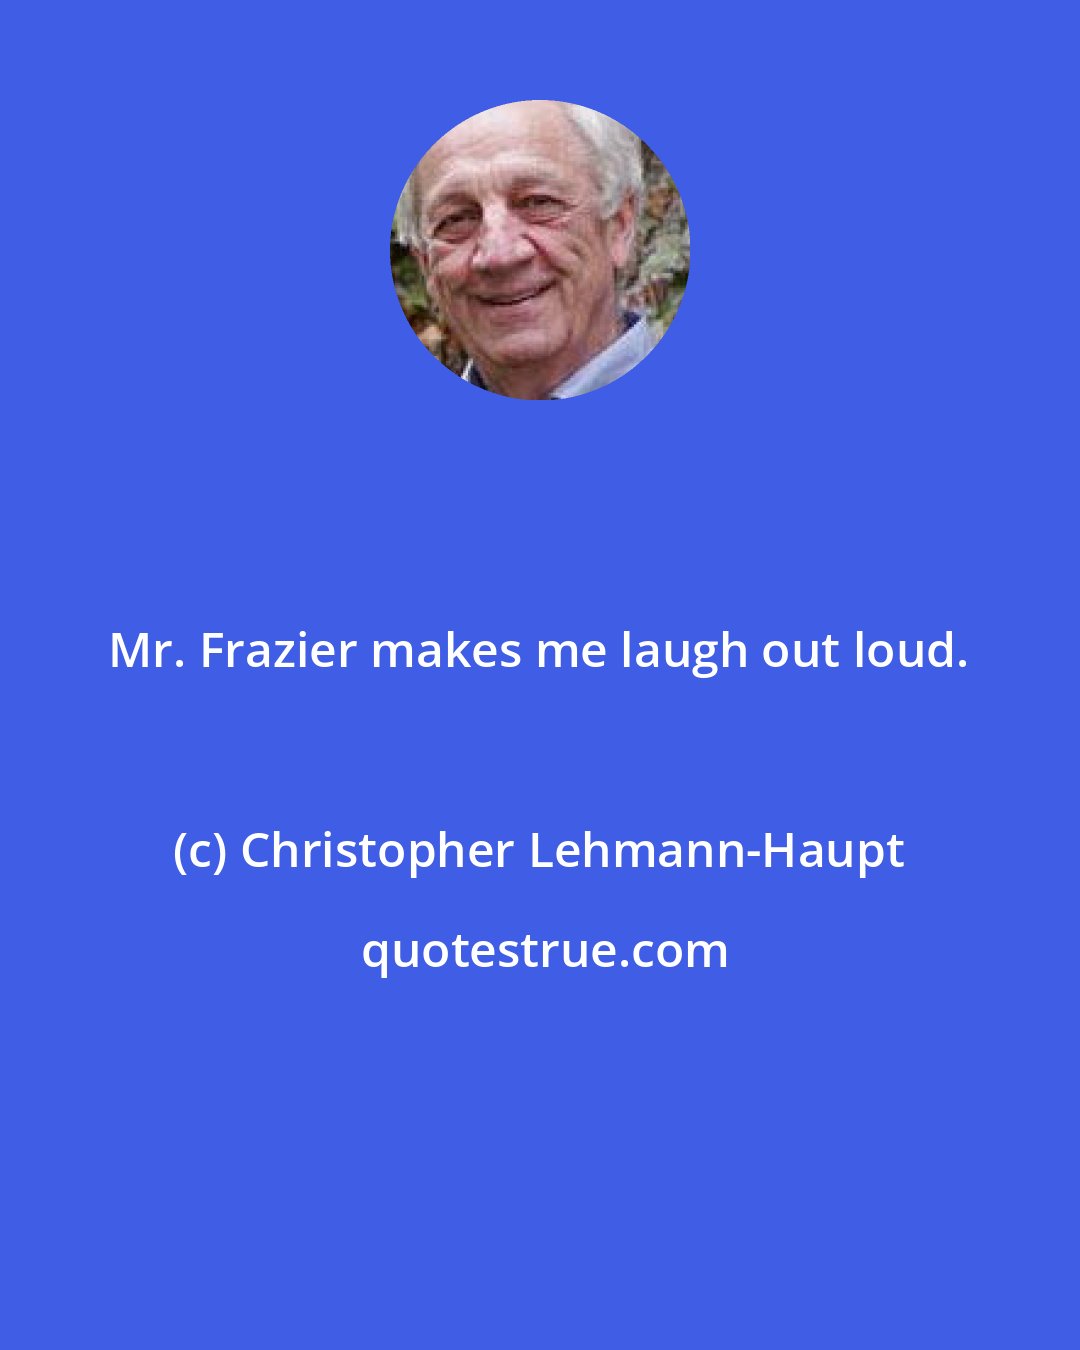 Christopher Lehmann-Haupt: Mr. Frazier makes me laugh out loud.